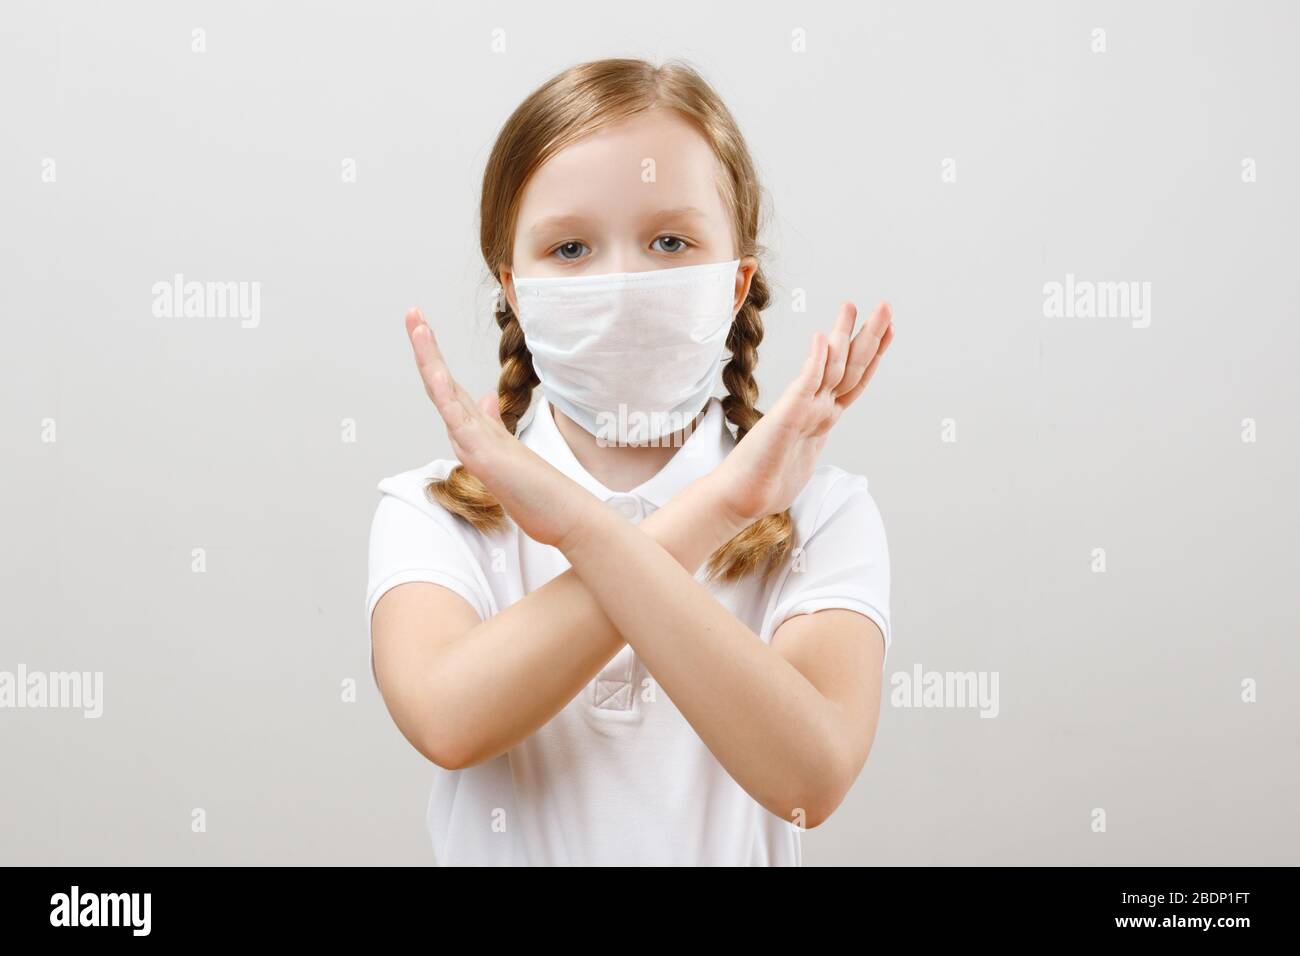 Ein kleines Mädchen in einer schützenden medizinischen Maske zeigt eine Stopp-Geste mit den Händen während einer Coronavirus-Pandemie. Porträt eines Kindes auf grauem Hintergrund Stockfoto